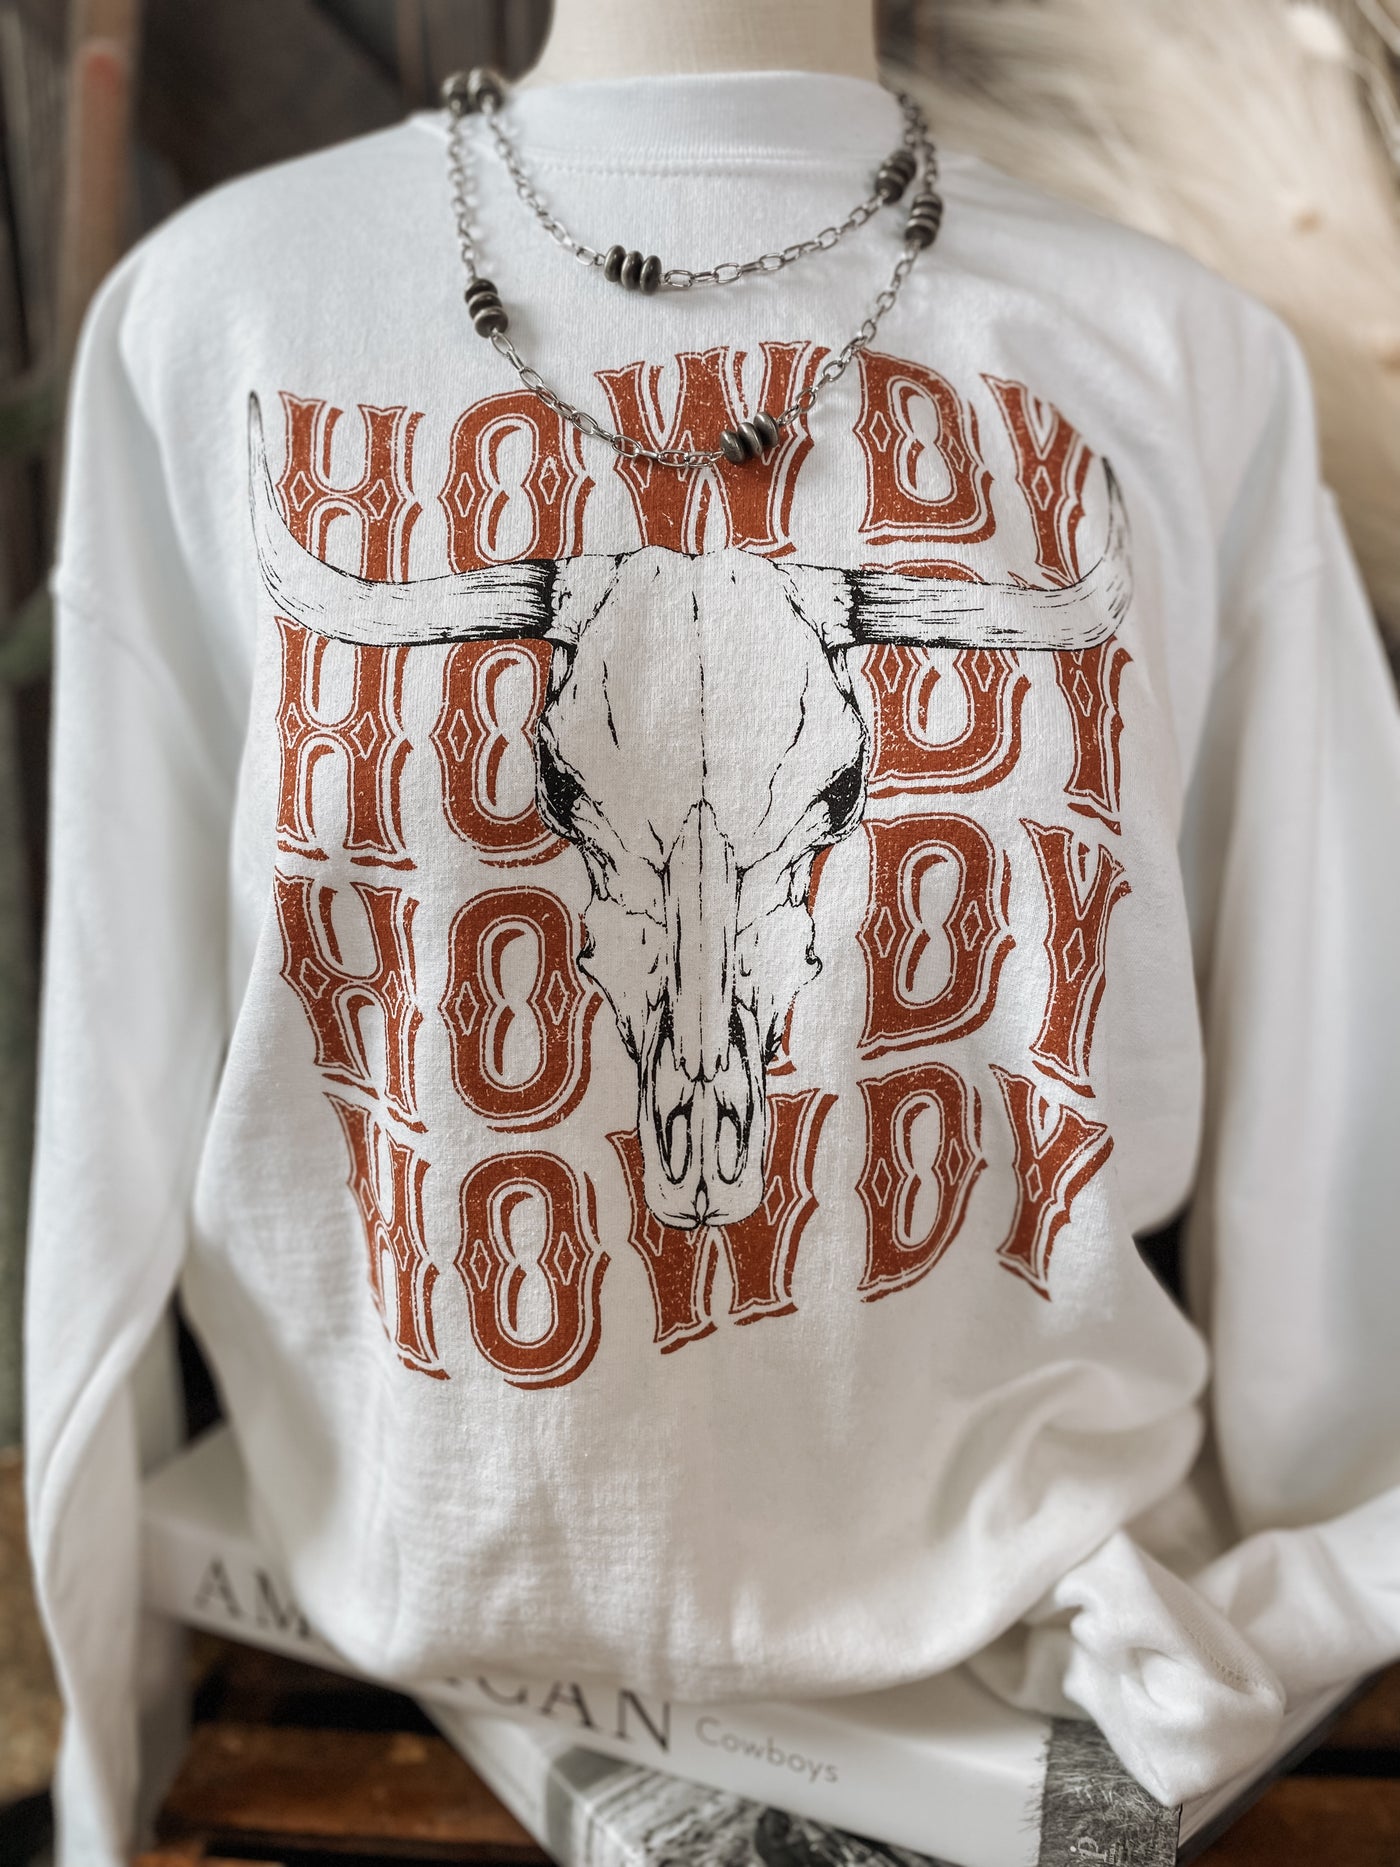 Howdy Sweatshirt - White